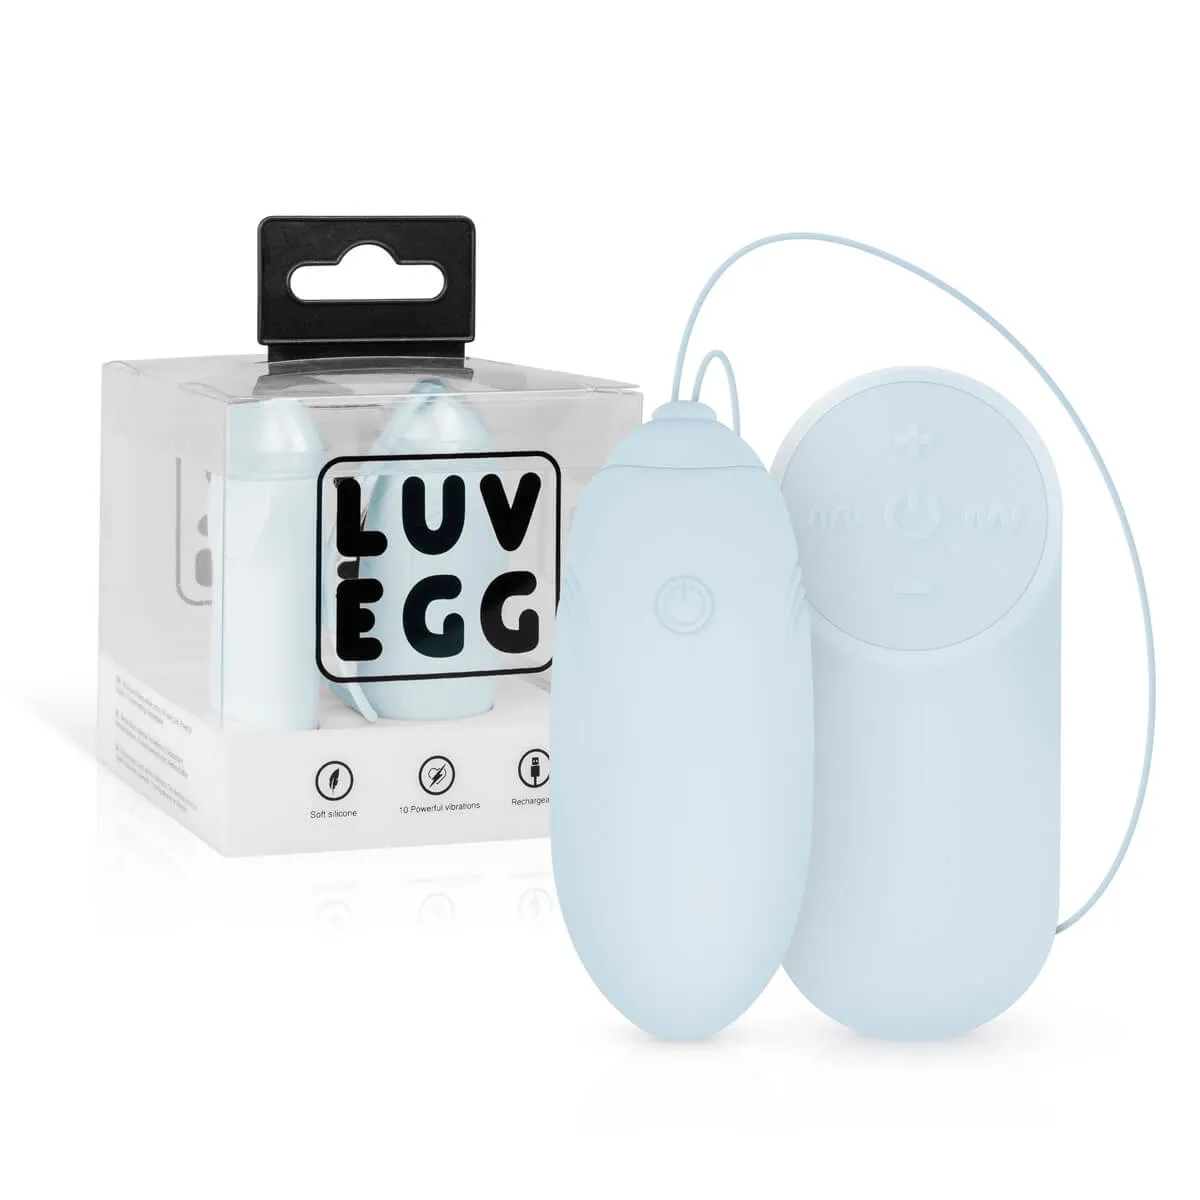 LUV EGG voděodolné vajíčko s dálkovým ovládáním